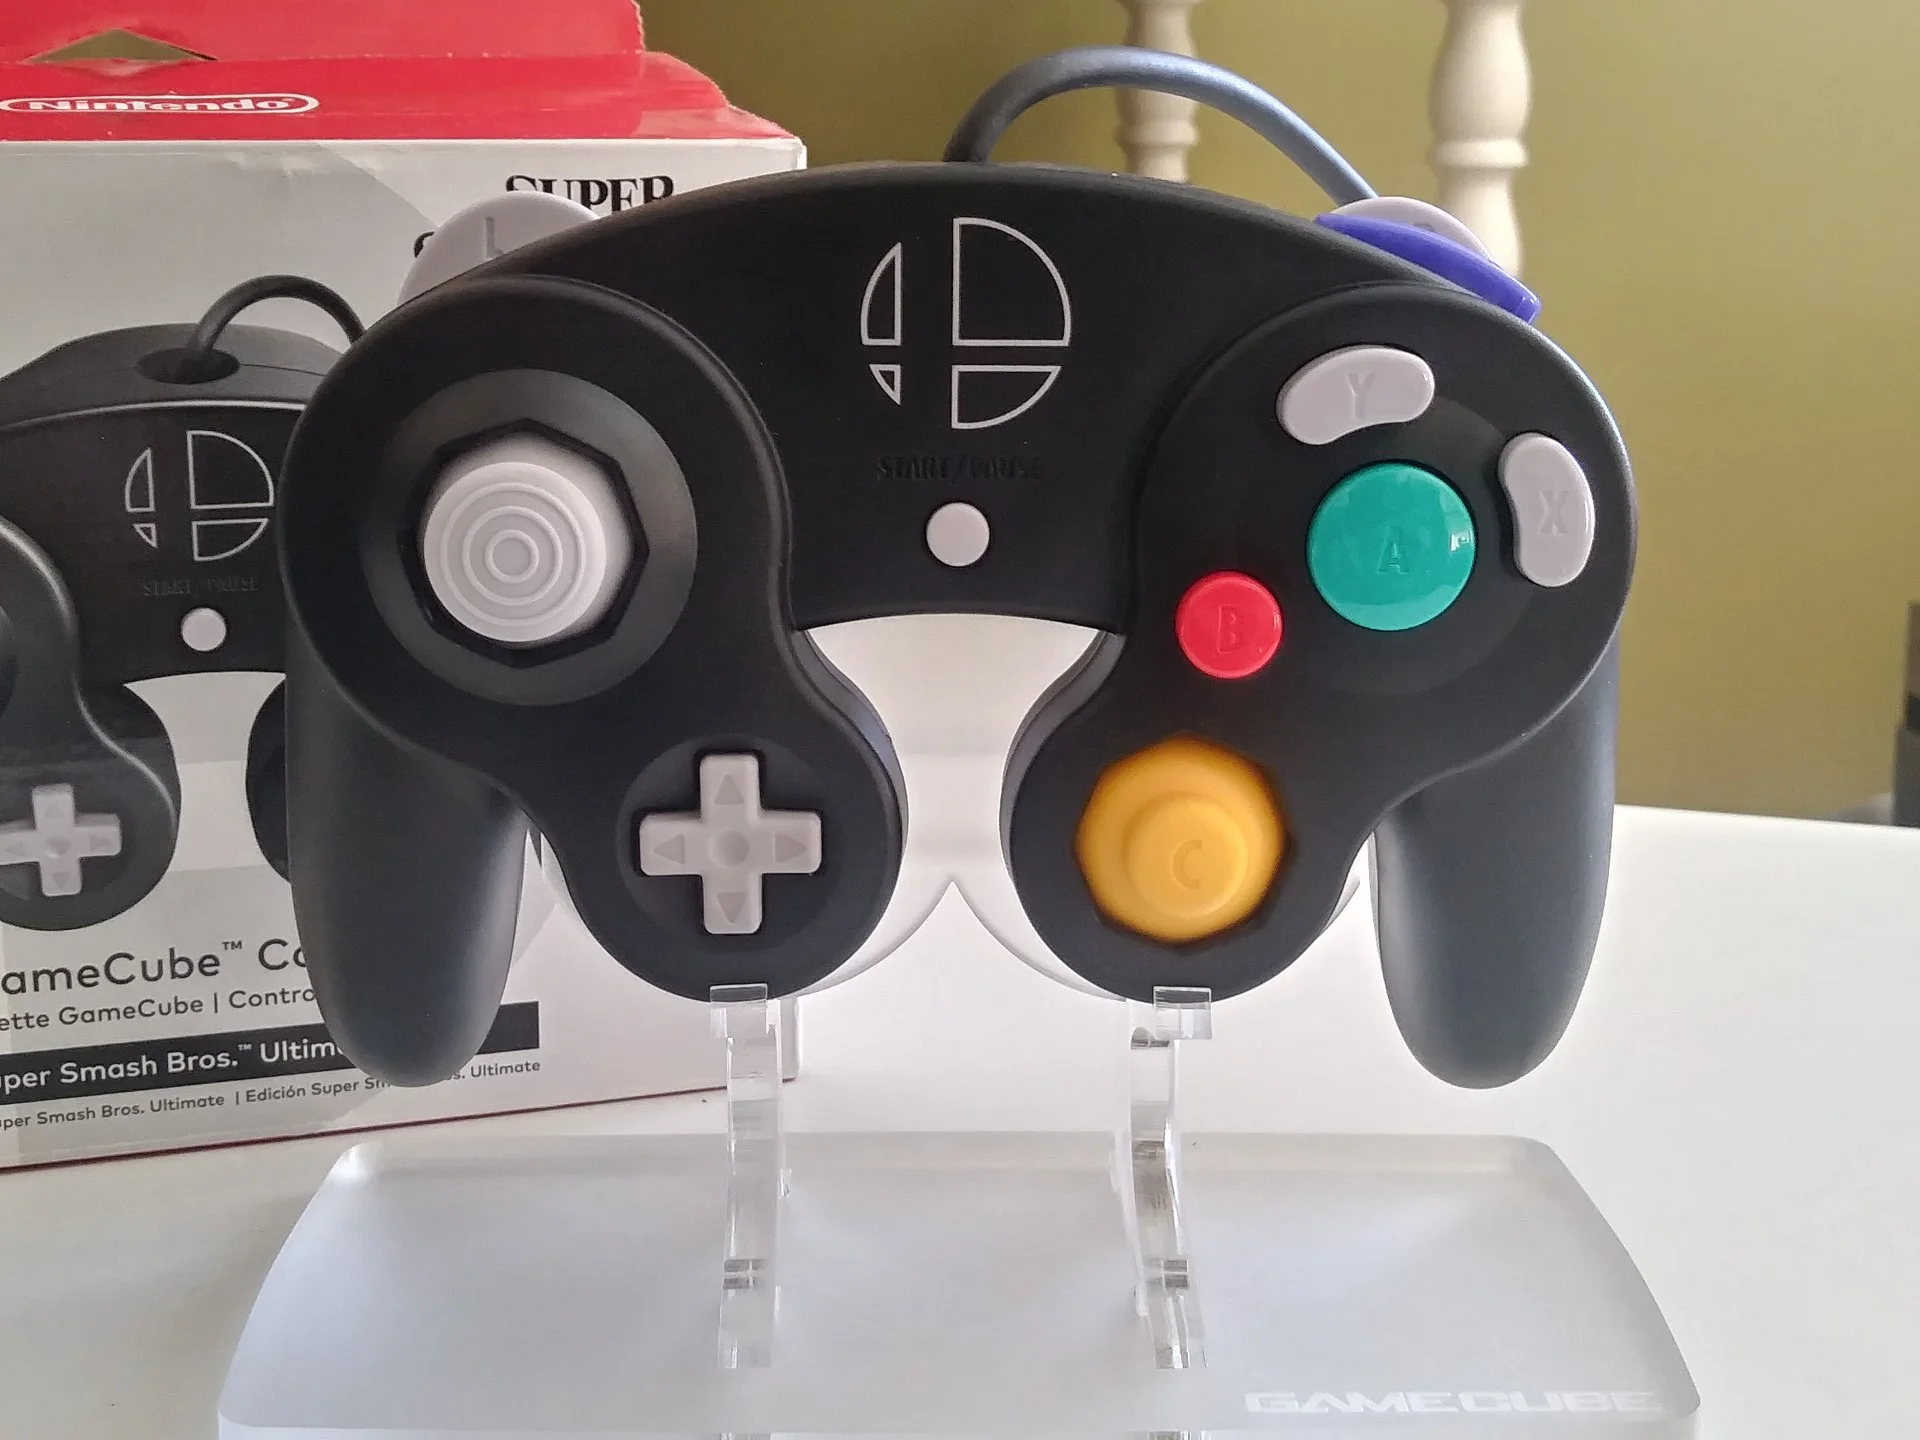  Nintendo GameCube Super Smash Bros. Ultimate Controller [AUS]